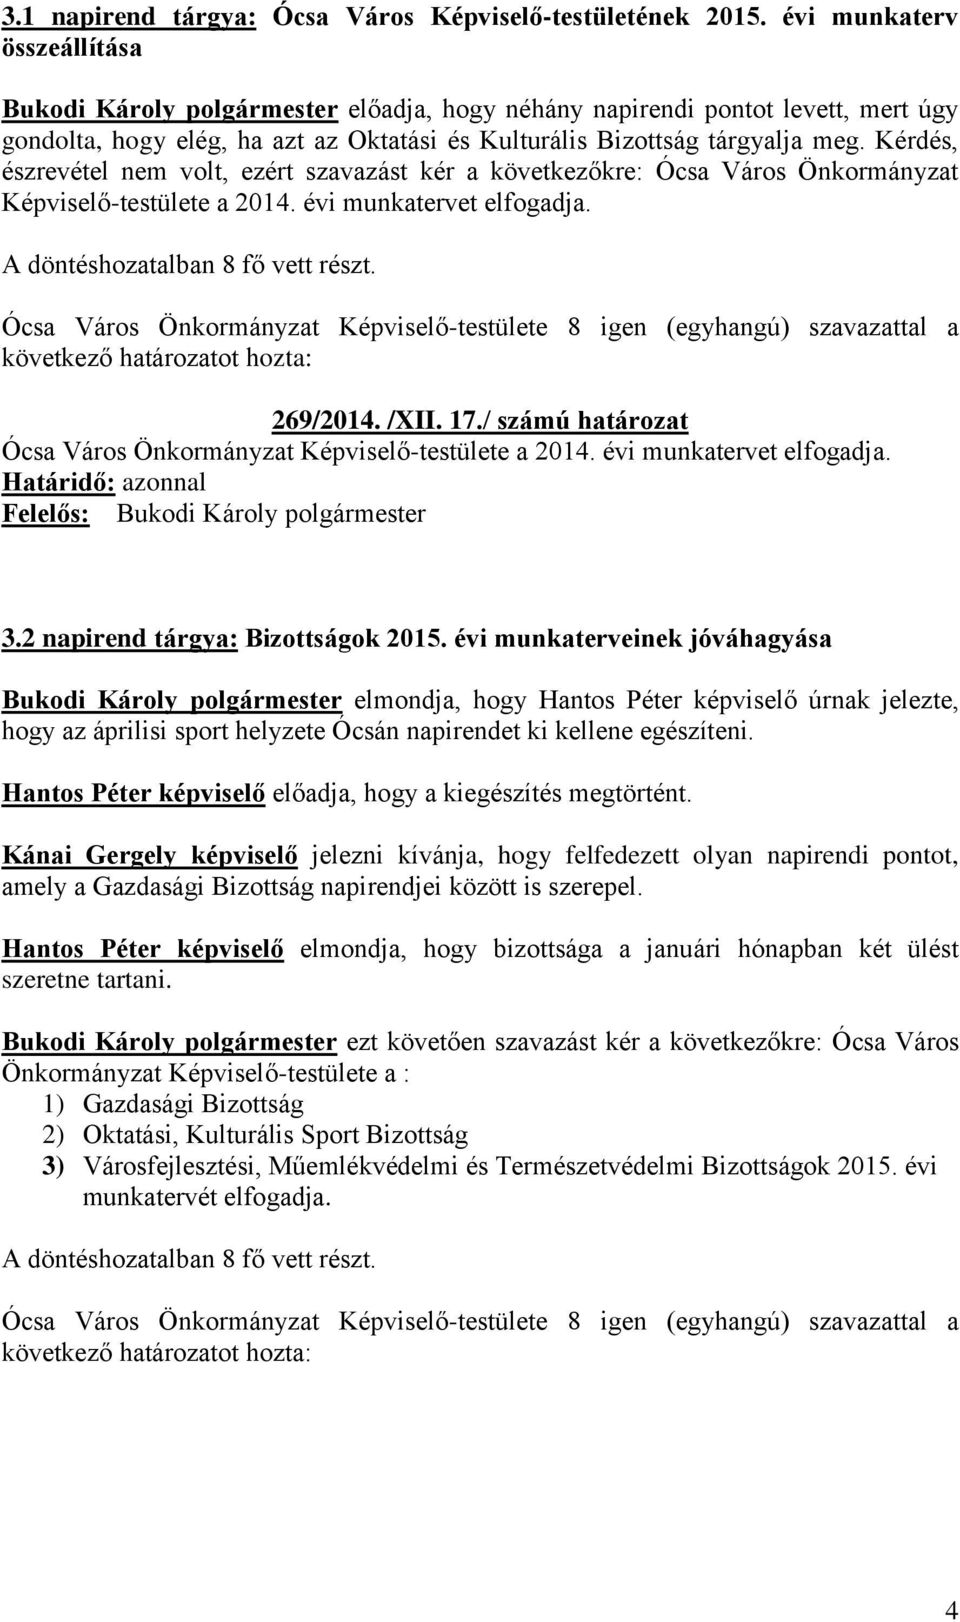 Kérdés, észrevétel nem volt, ezért szavazást kér a következőkre: Ócsa Város Önkormányzat Képviselő-testülete a 2014. évi munkatervet elfogadja. 269/2014. /XII. 17.